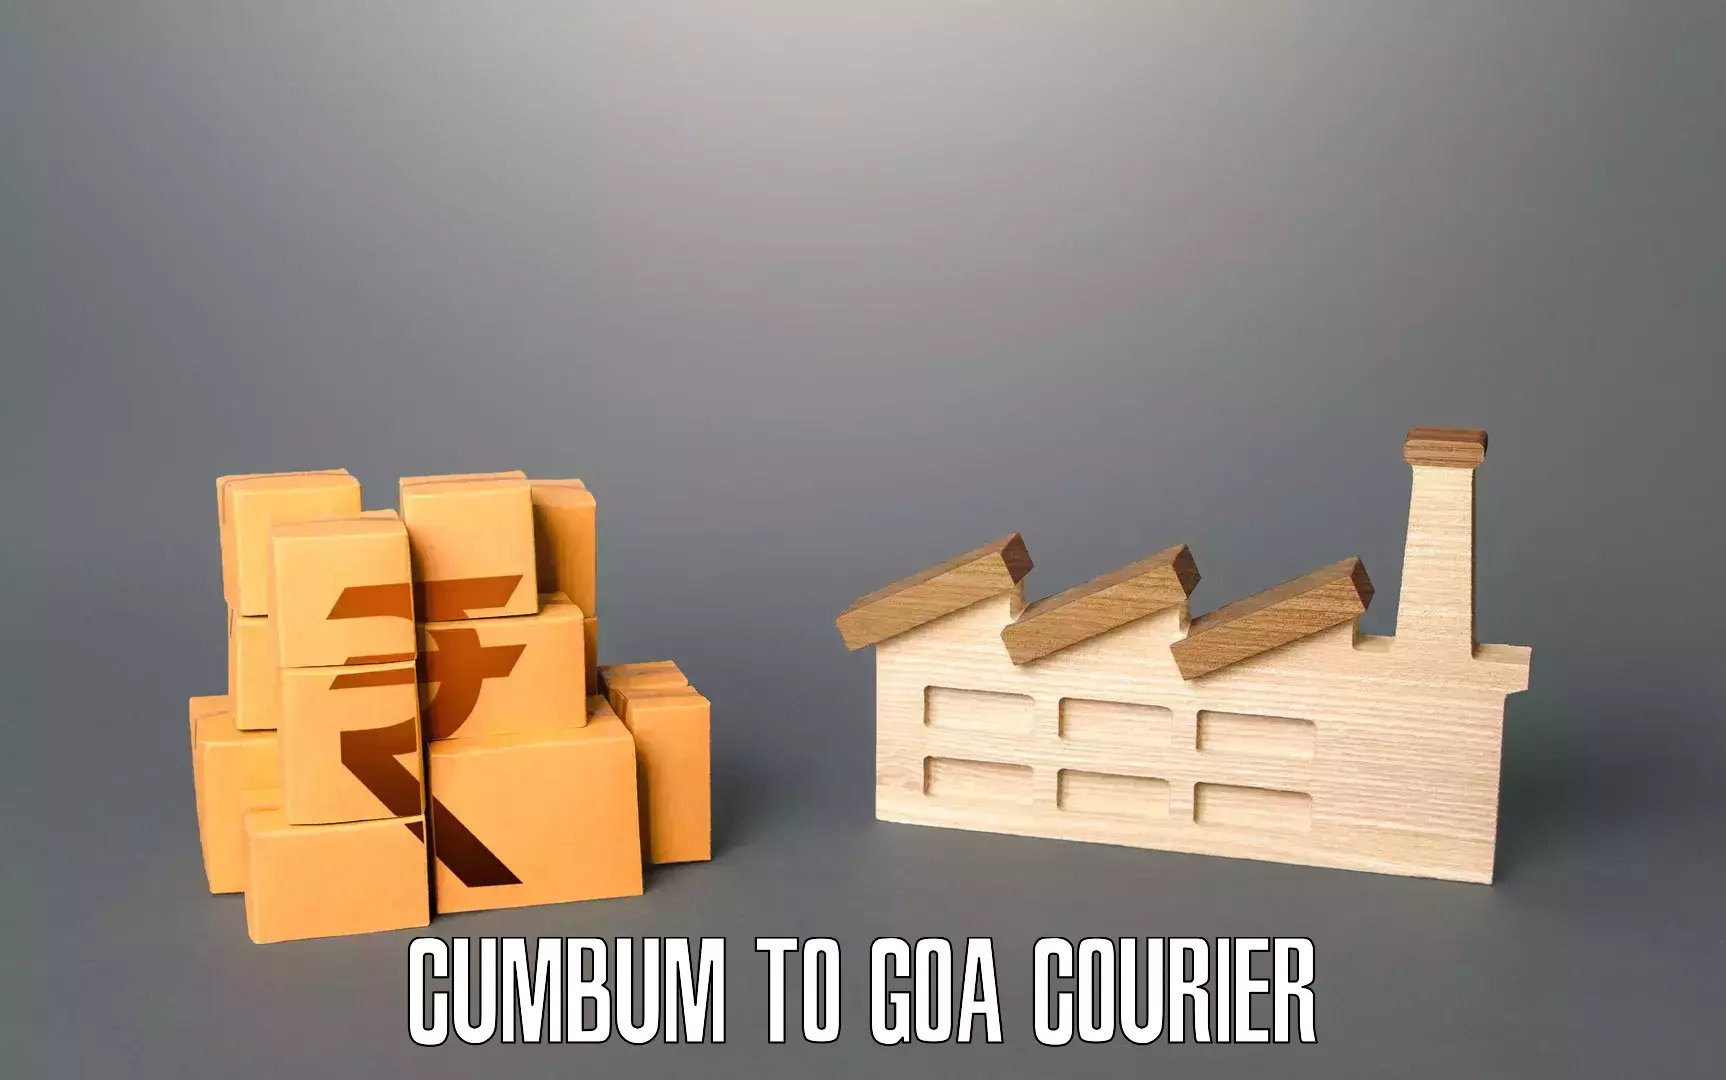 Home goods moving company Cumbum to South Goa